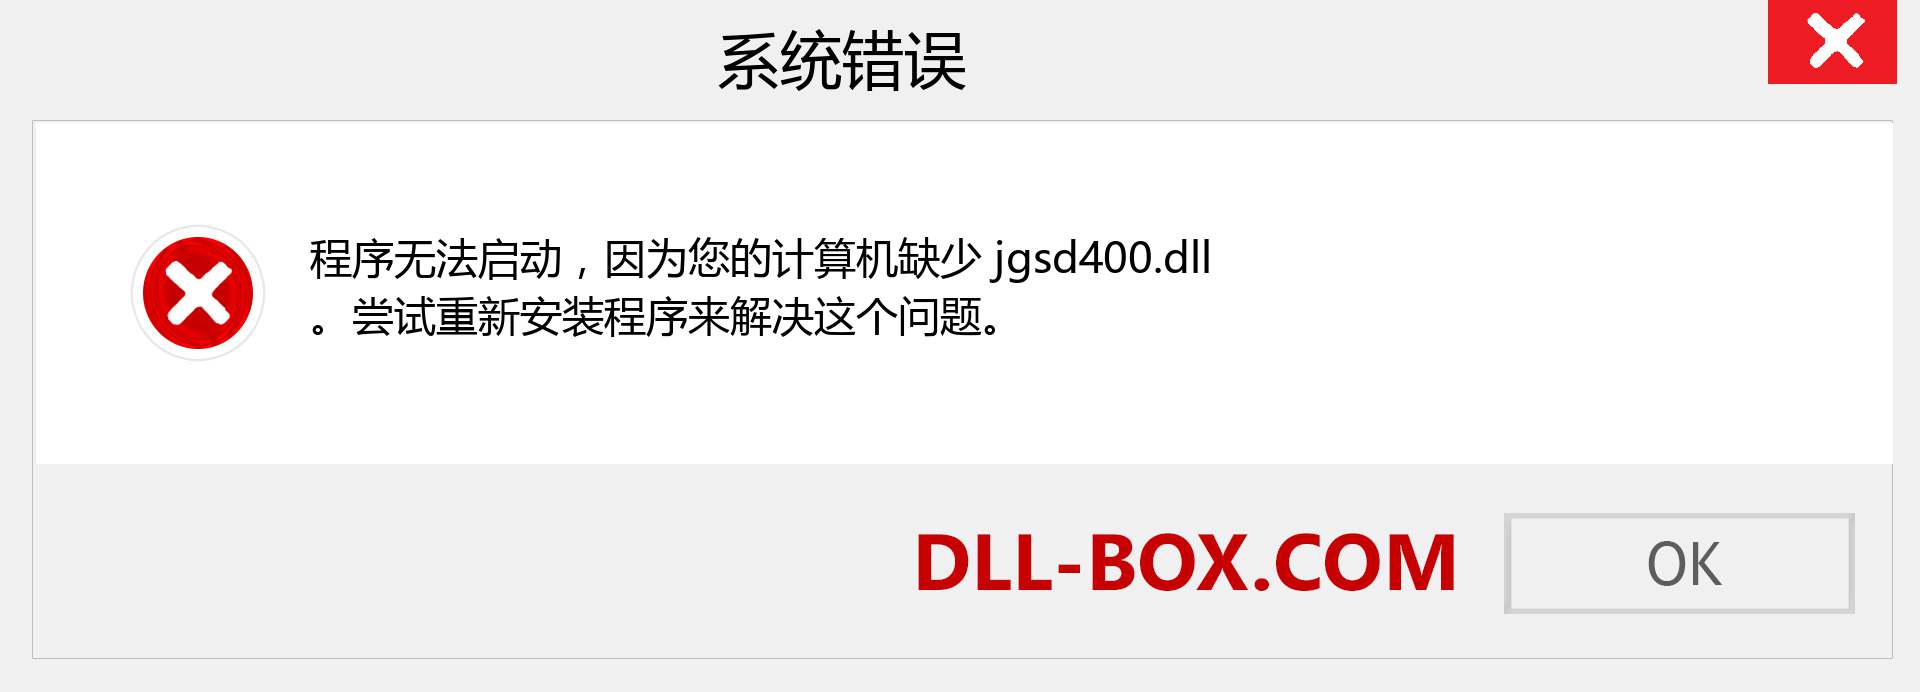 jgsd400.dll 文件丢失？。 适用于 Windows 7、8、10 的下载 - 修复 Windows、照片、图像上的 jgsd400 dll 丢失错误